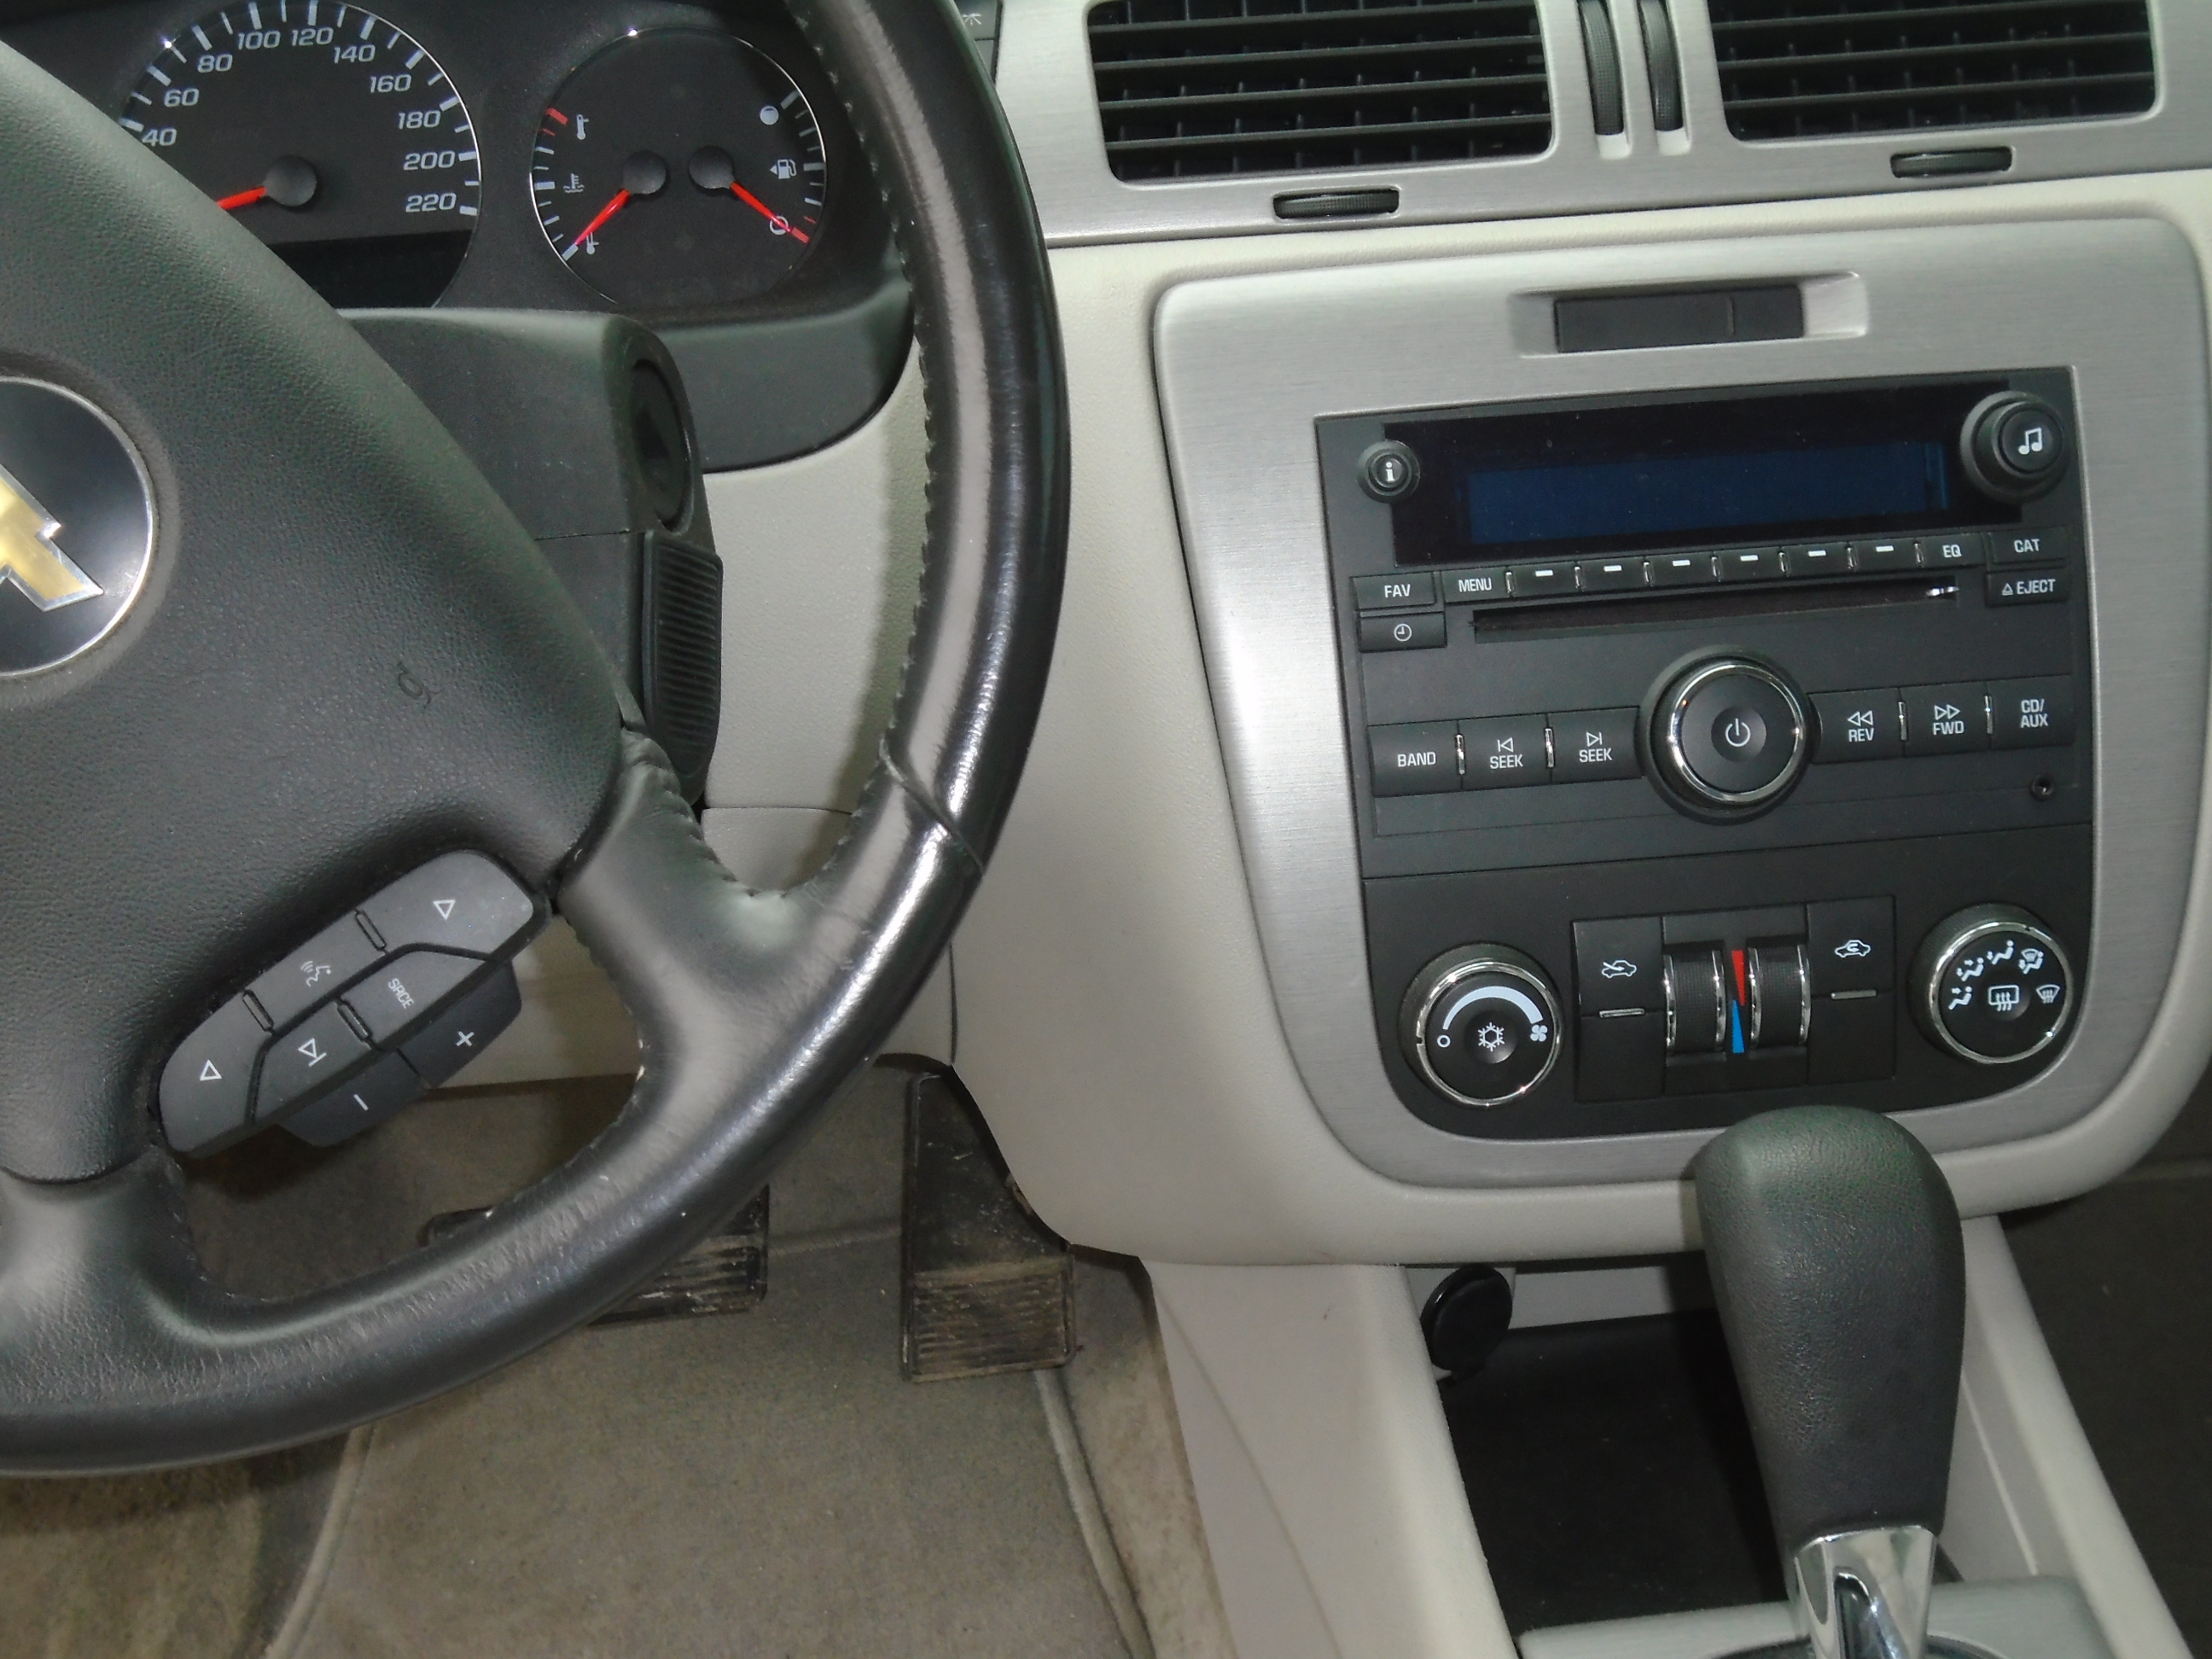 2006 Chev Impala Interior 1 Bob Currie Auto Sales